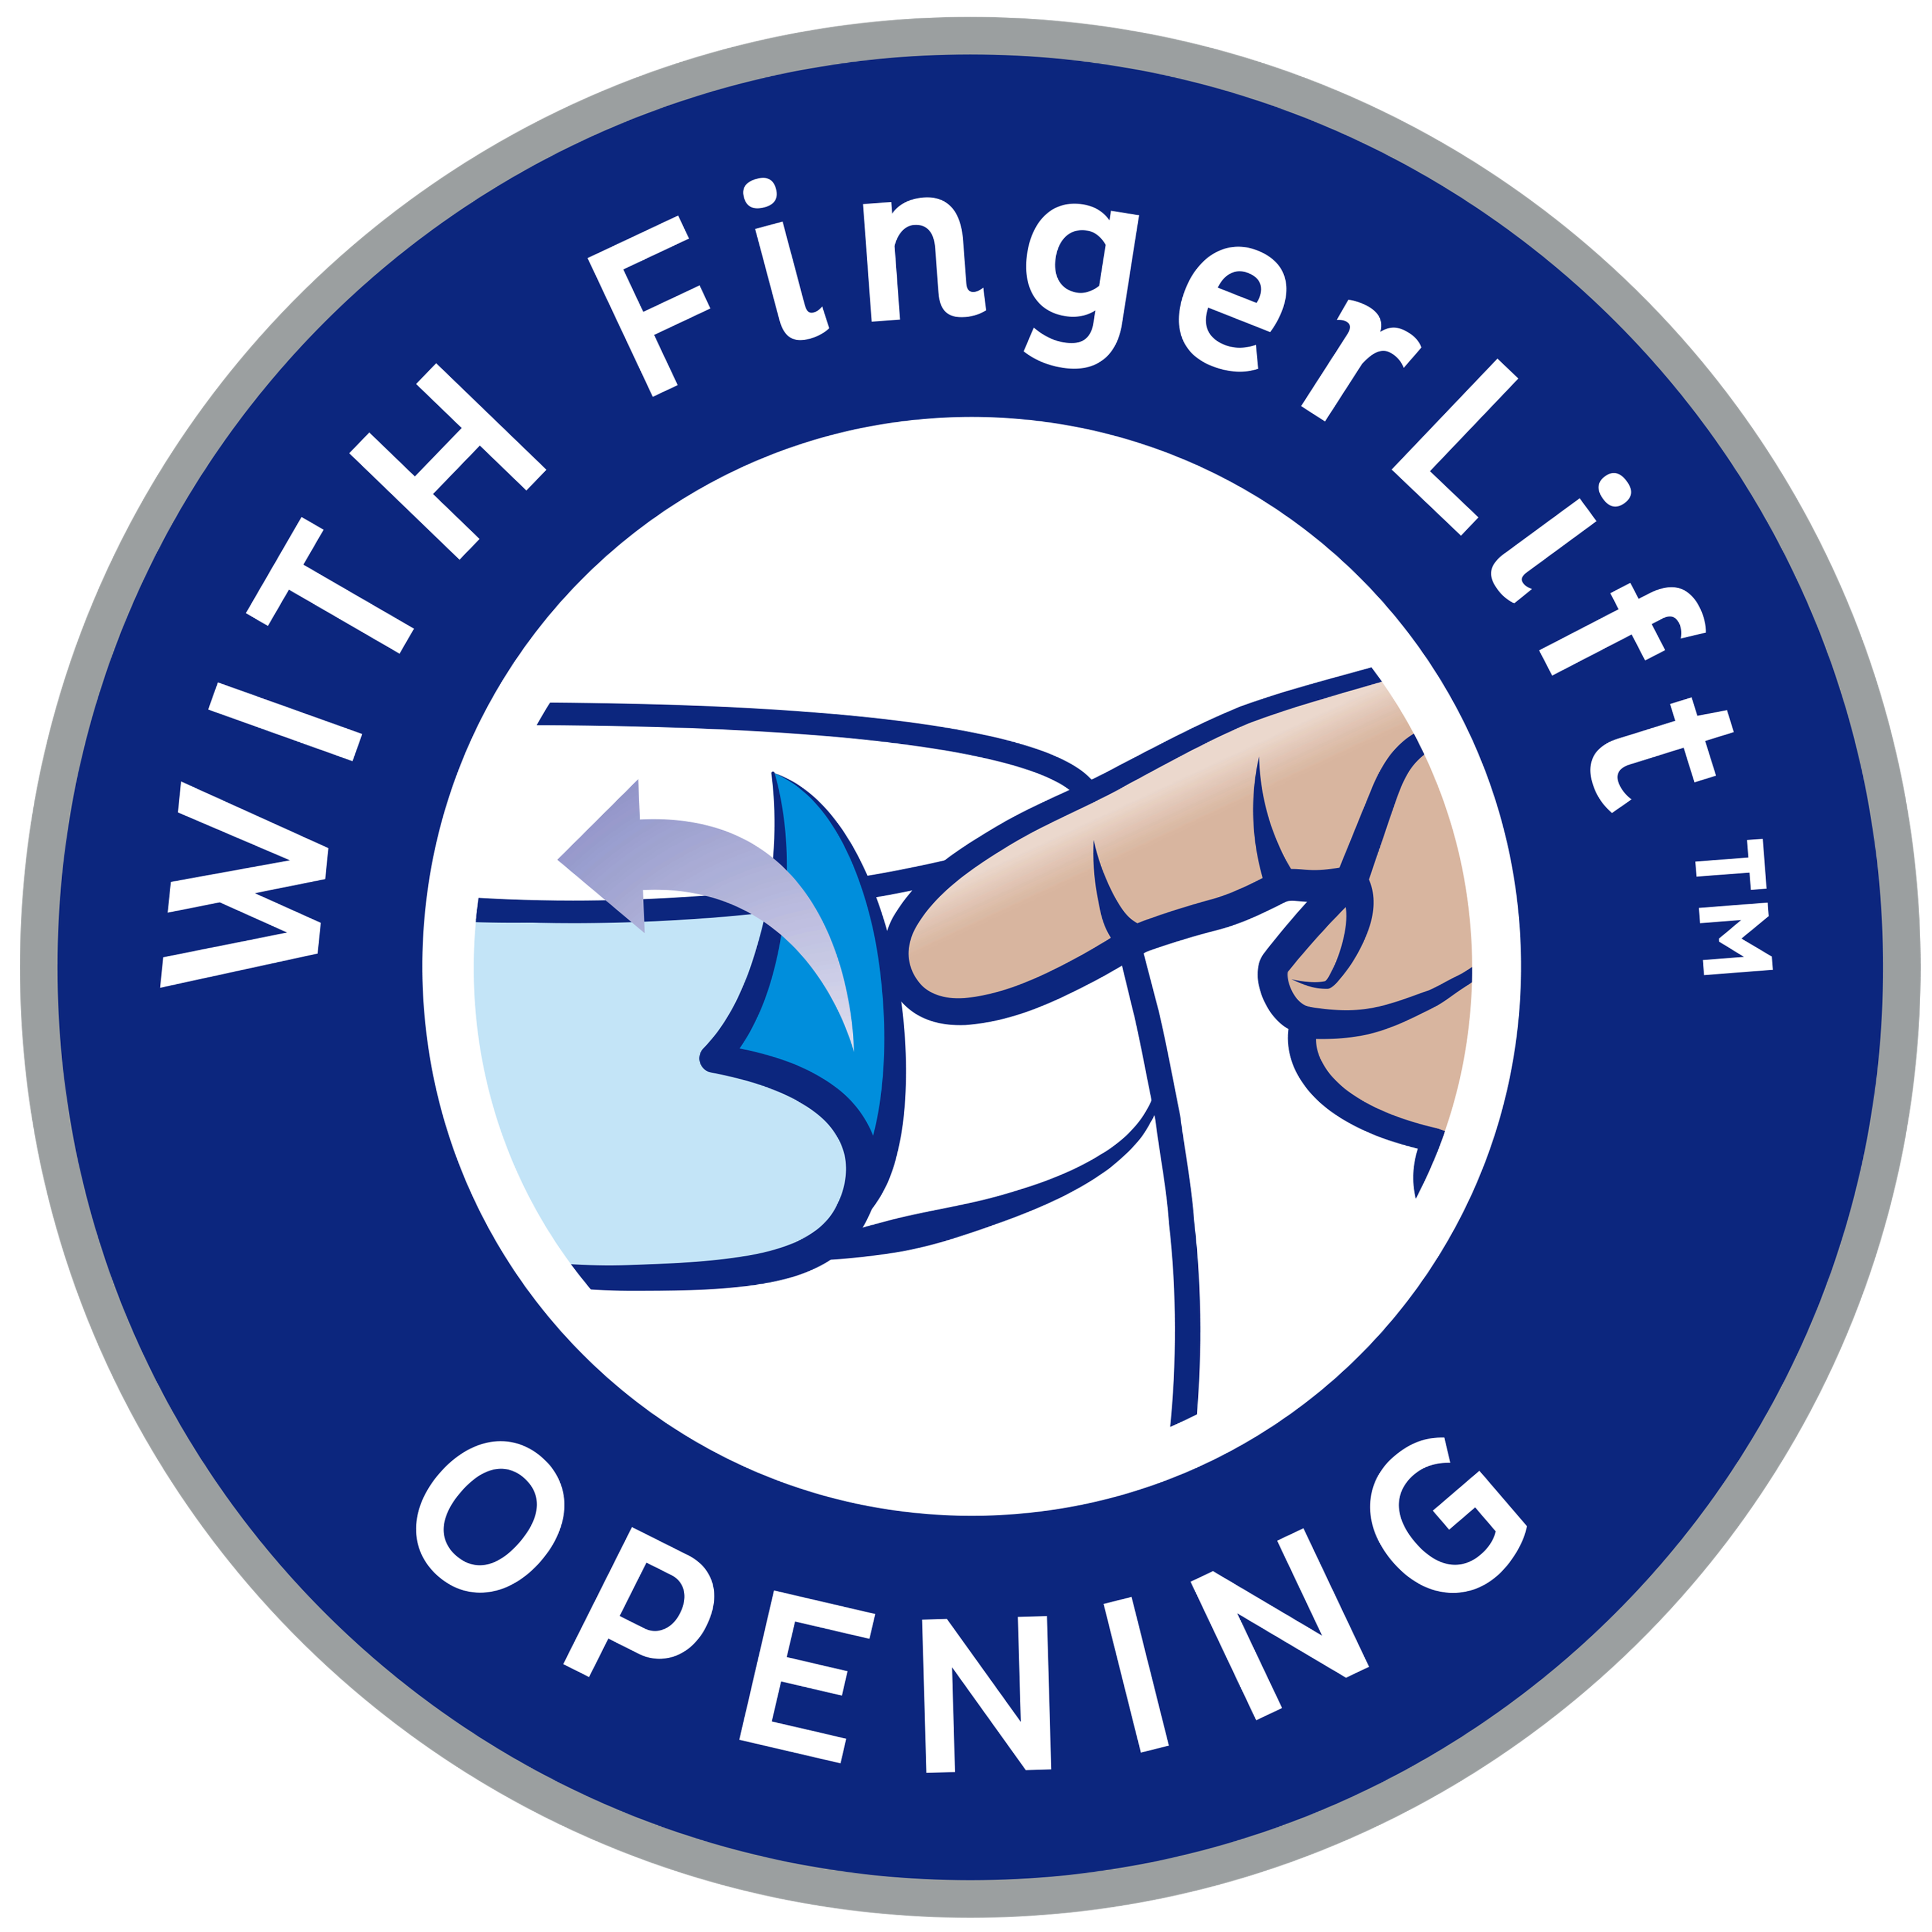 Con apertura FingerLift